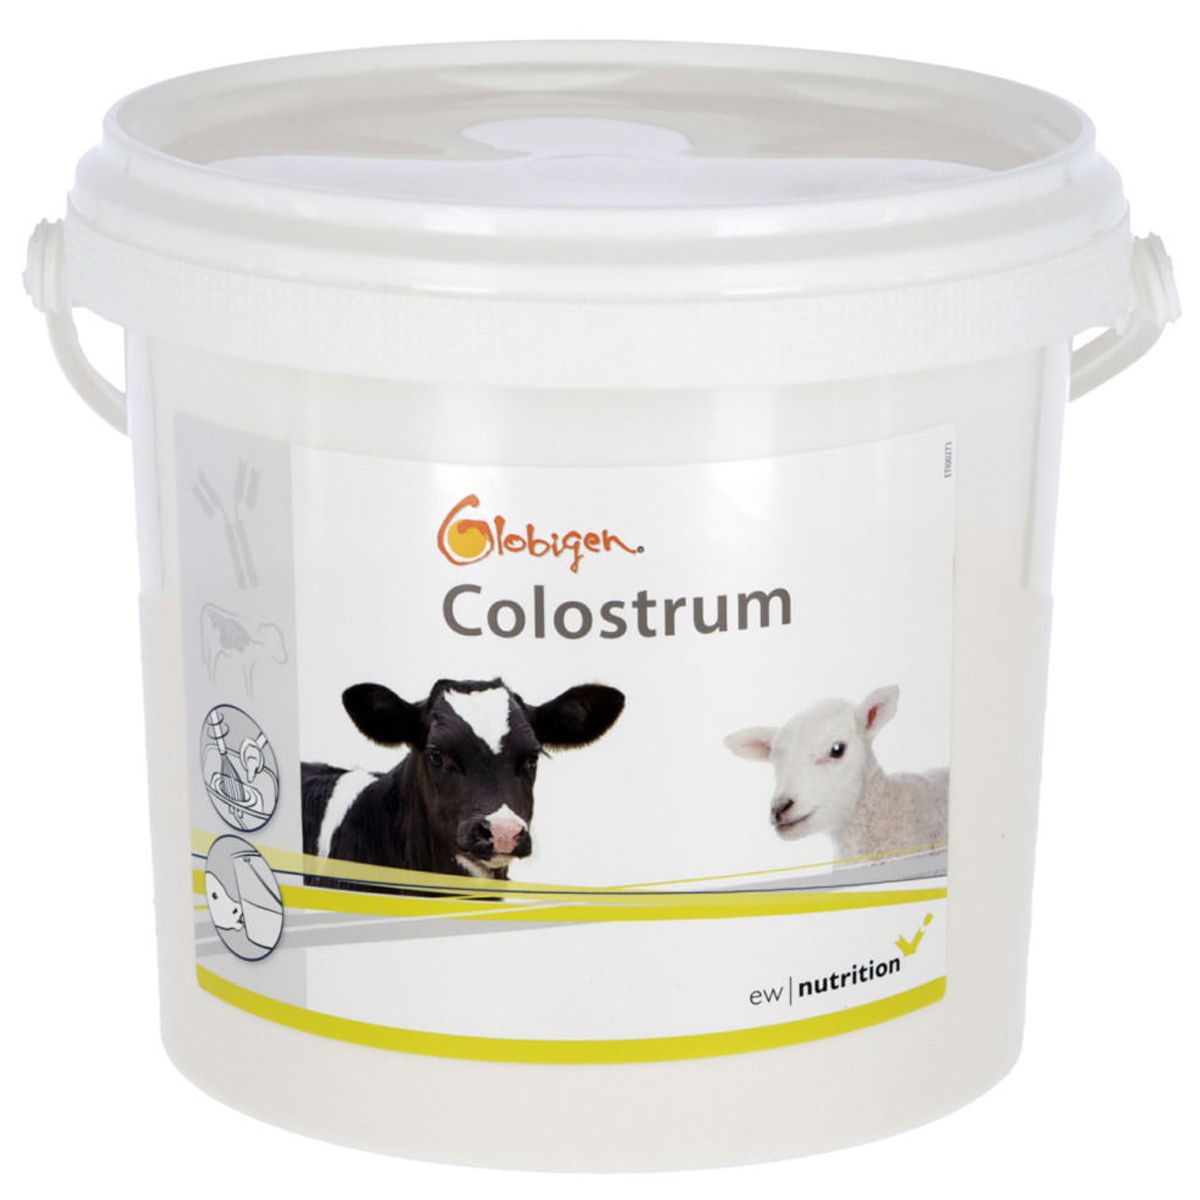 Globigen Colostrum supliment alimentar 1 kg